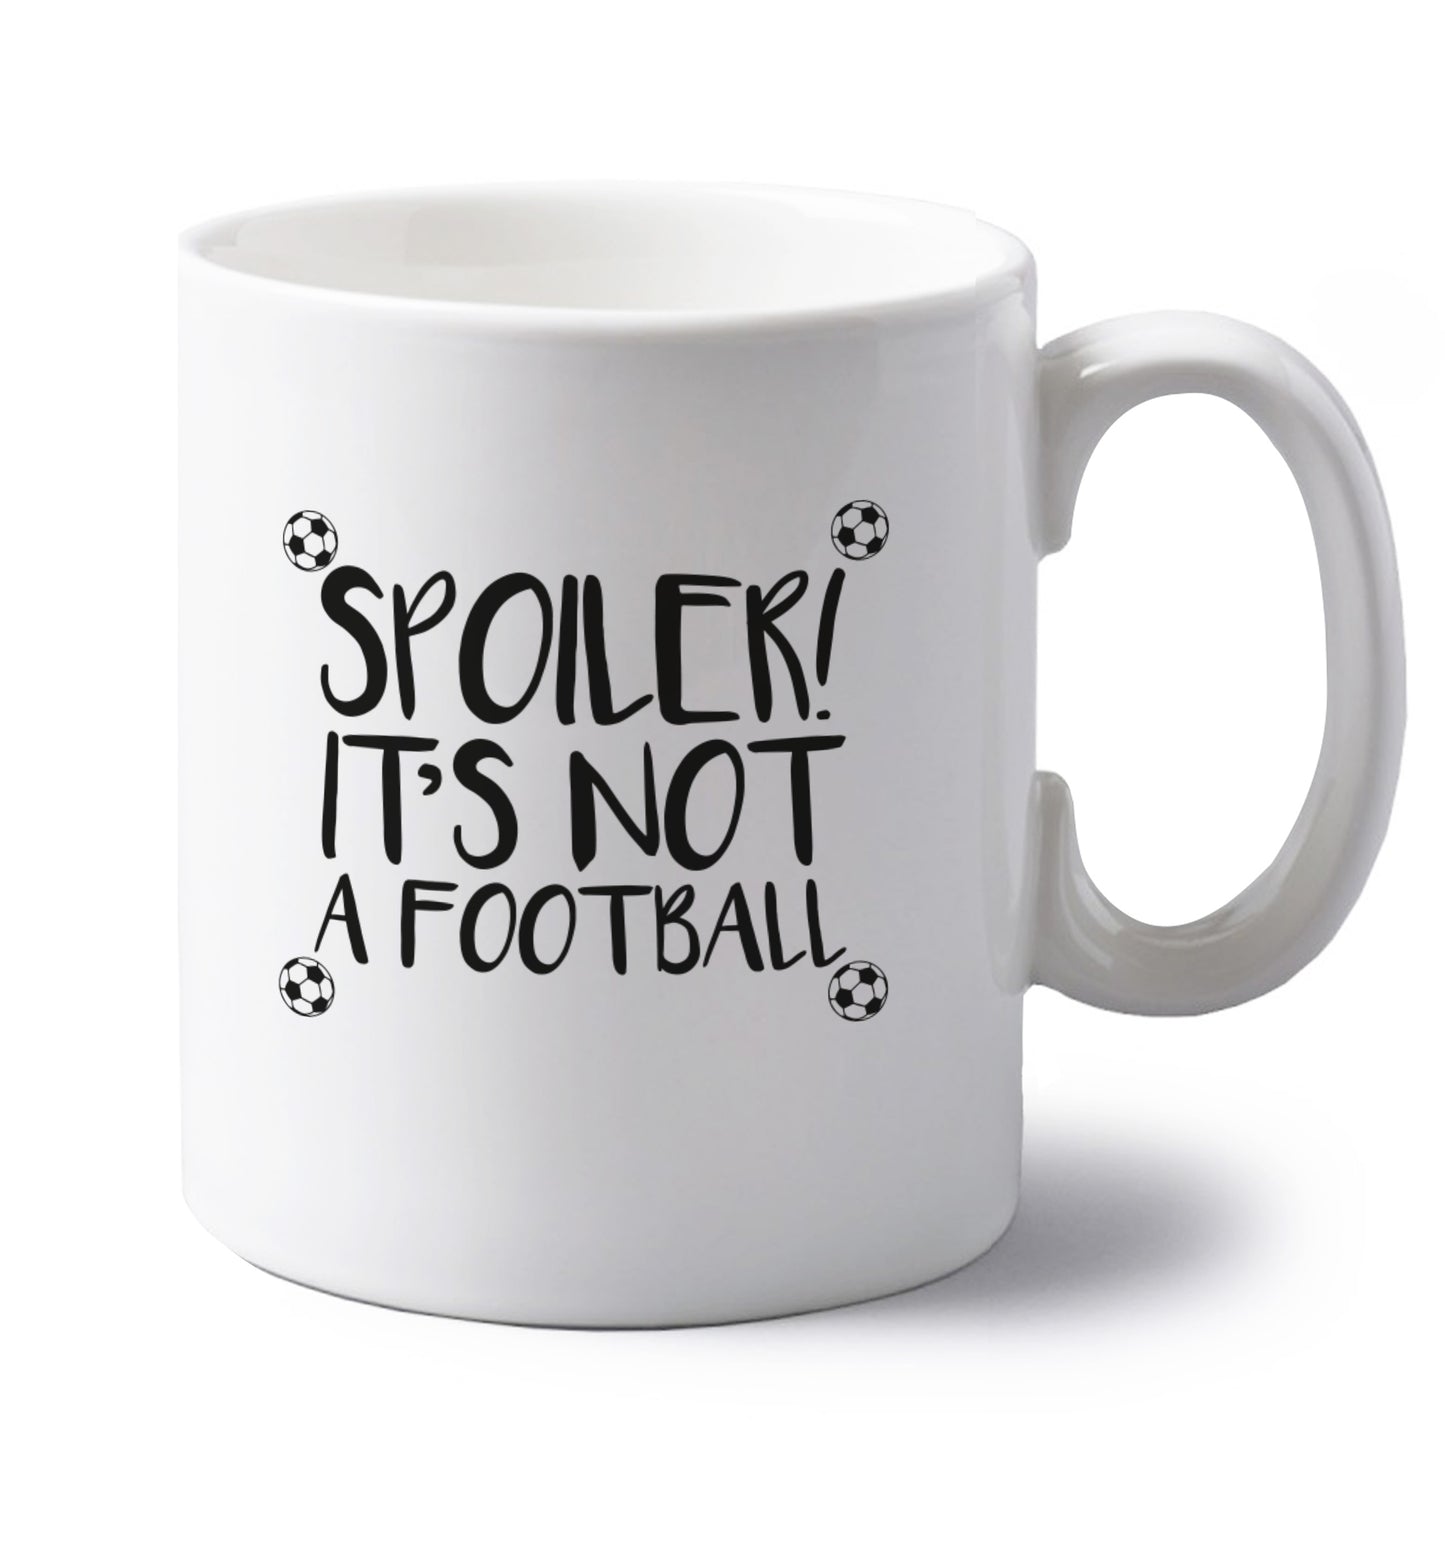 Spoiler it's not a football left handed white ceramic mug 